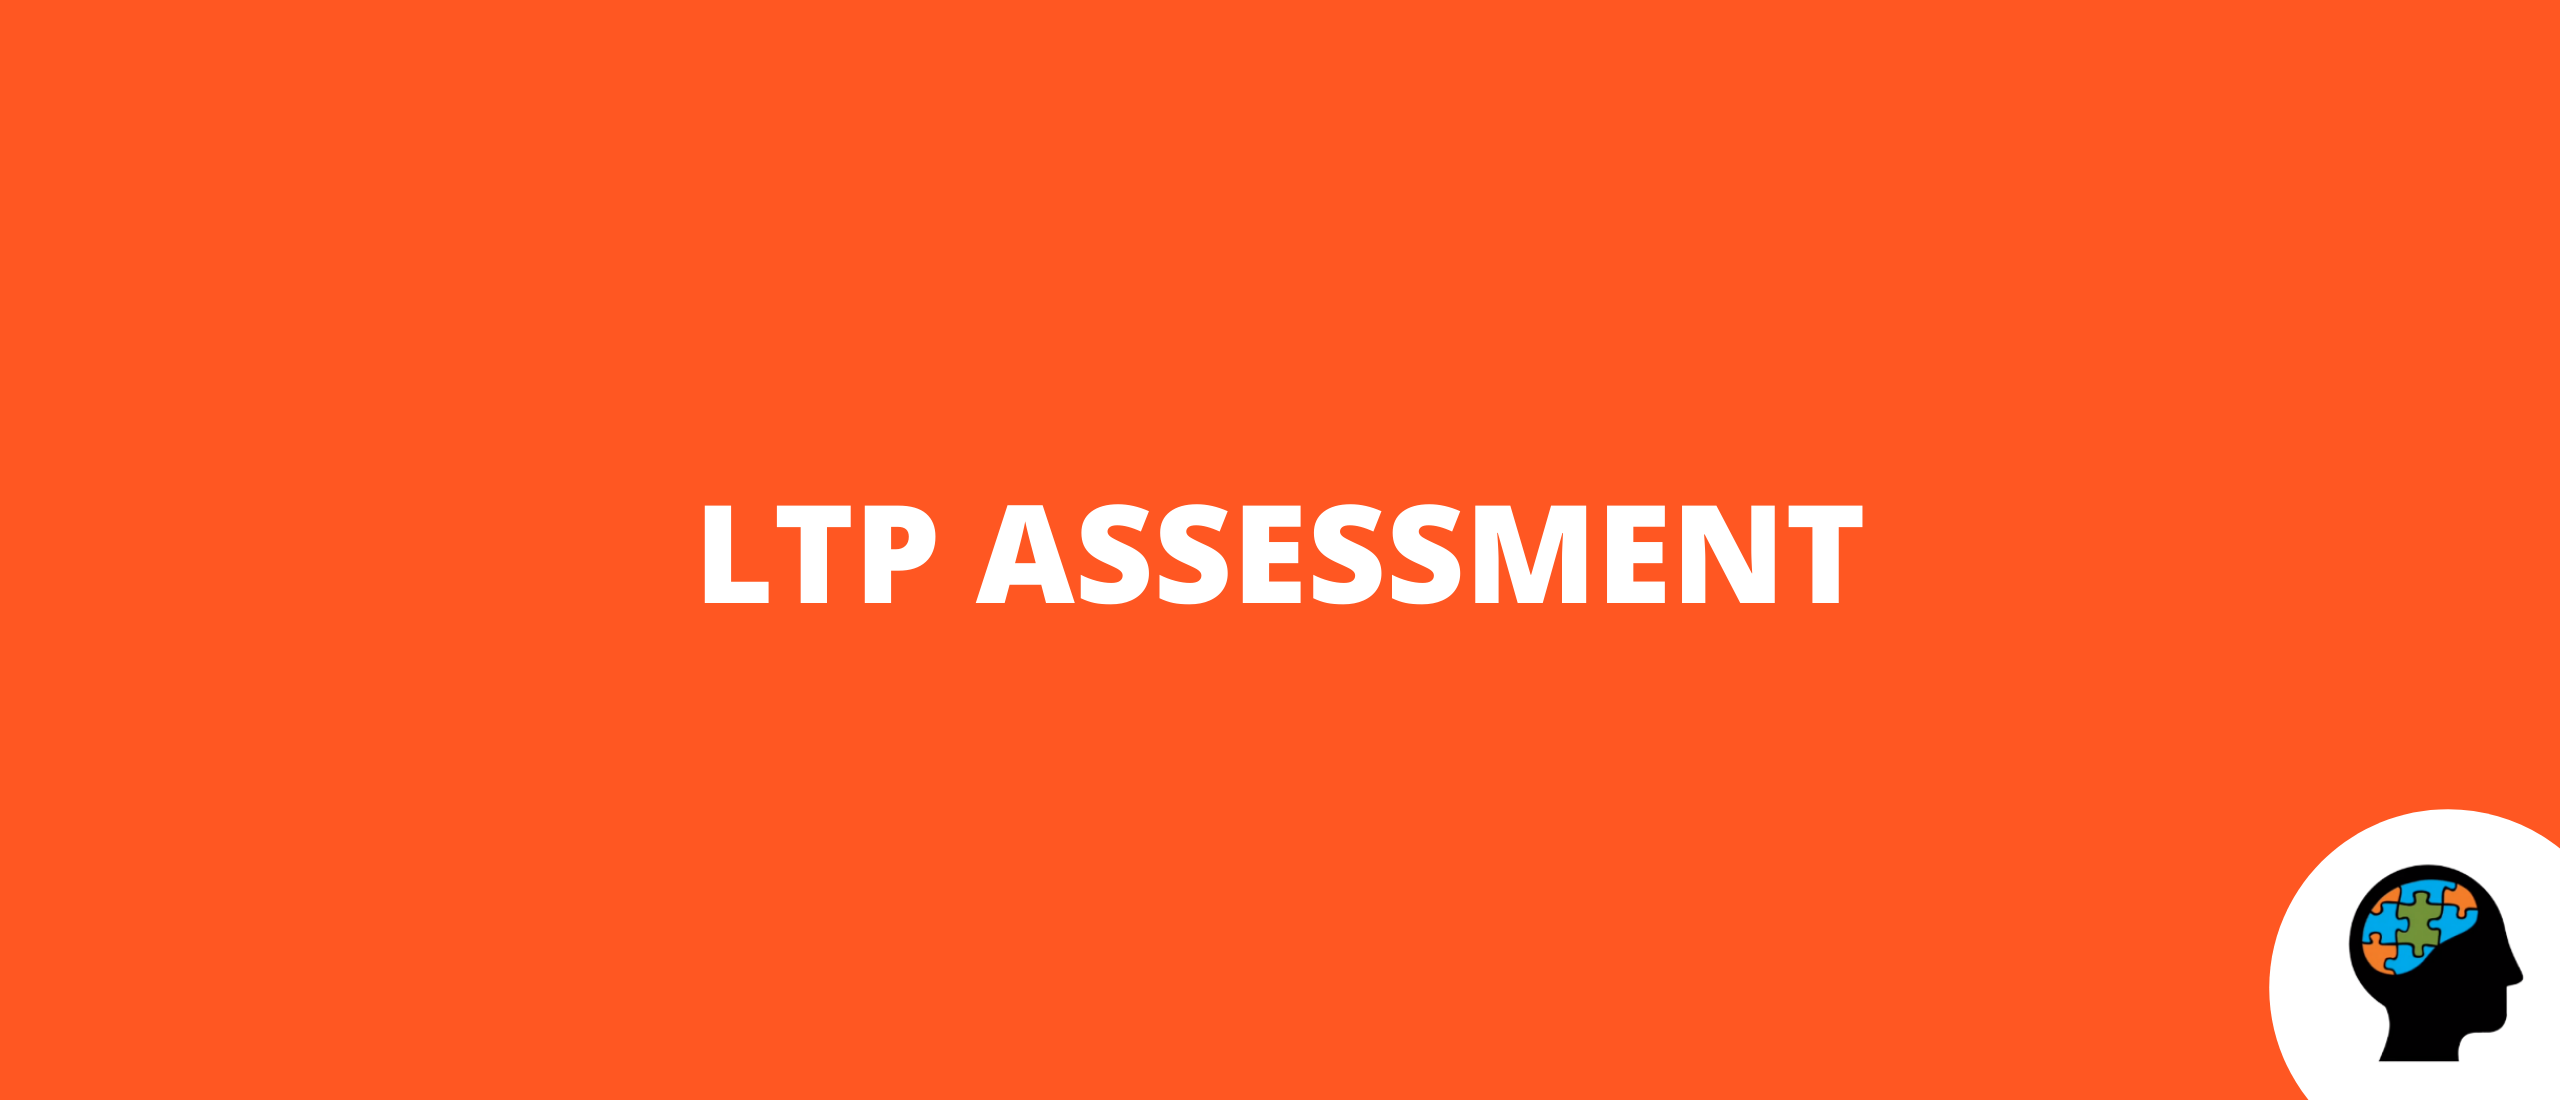 LTP assessment